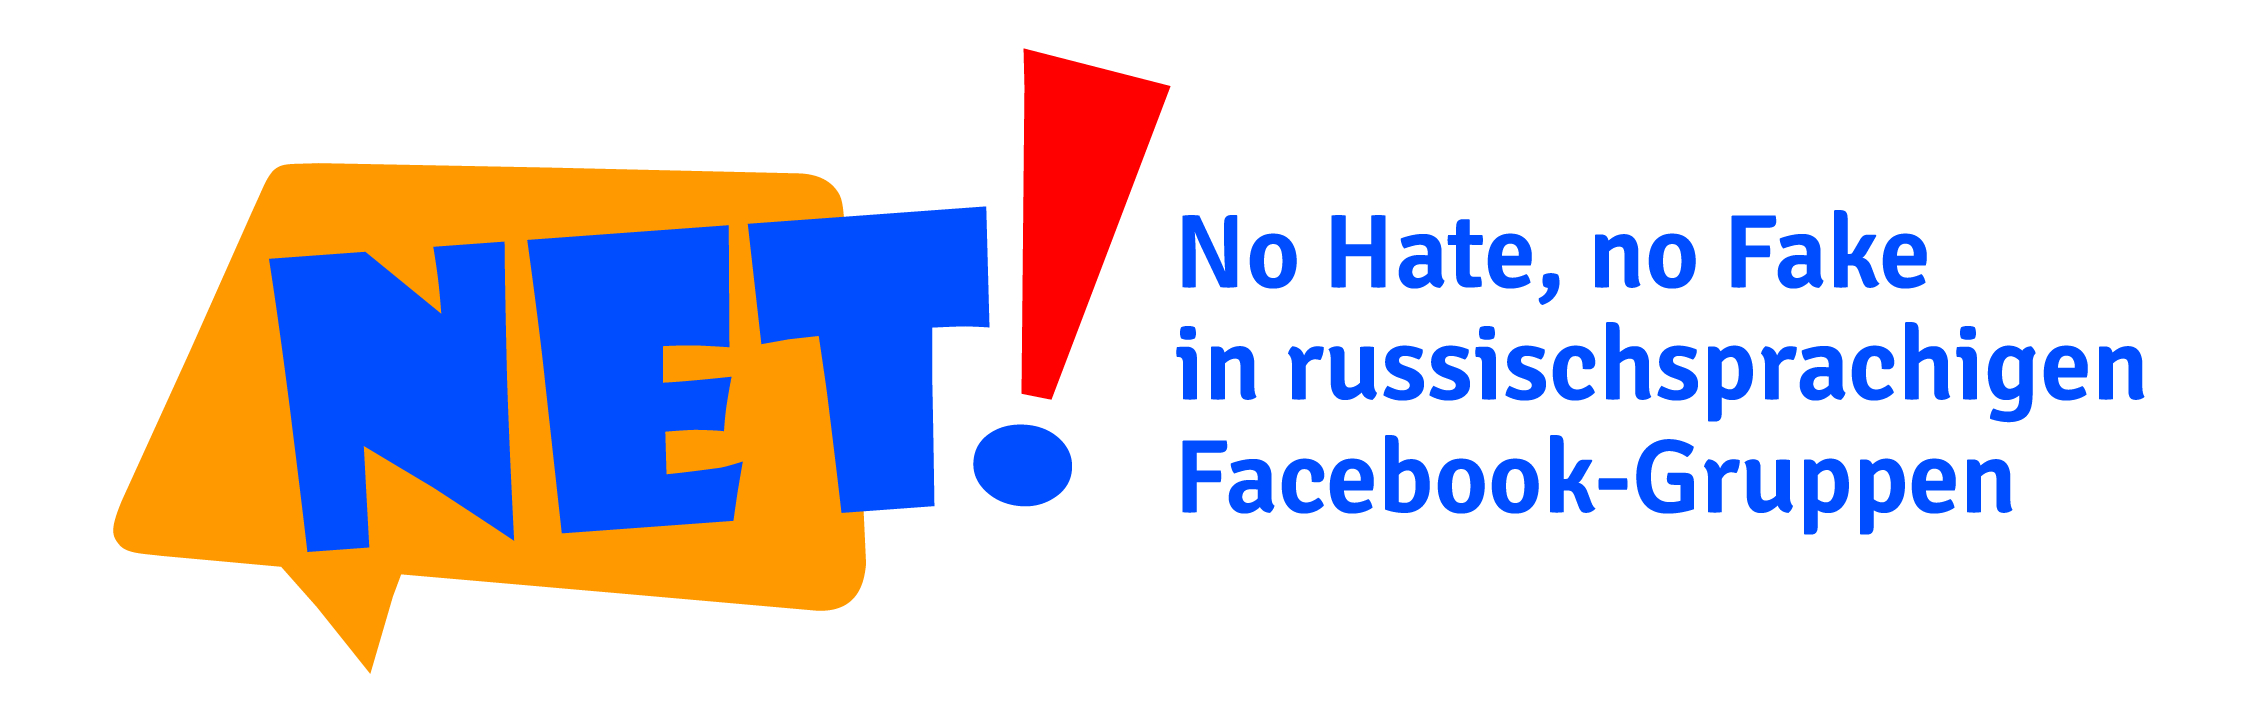 Logo No Hate No Fake